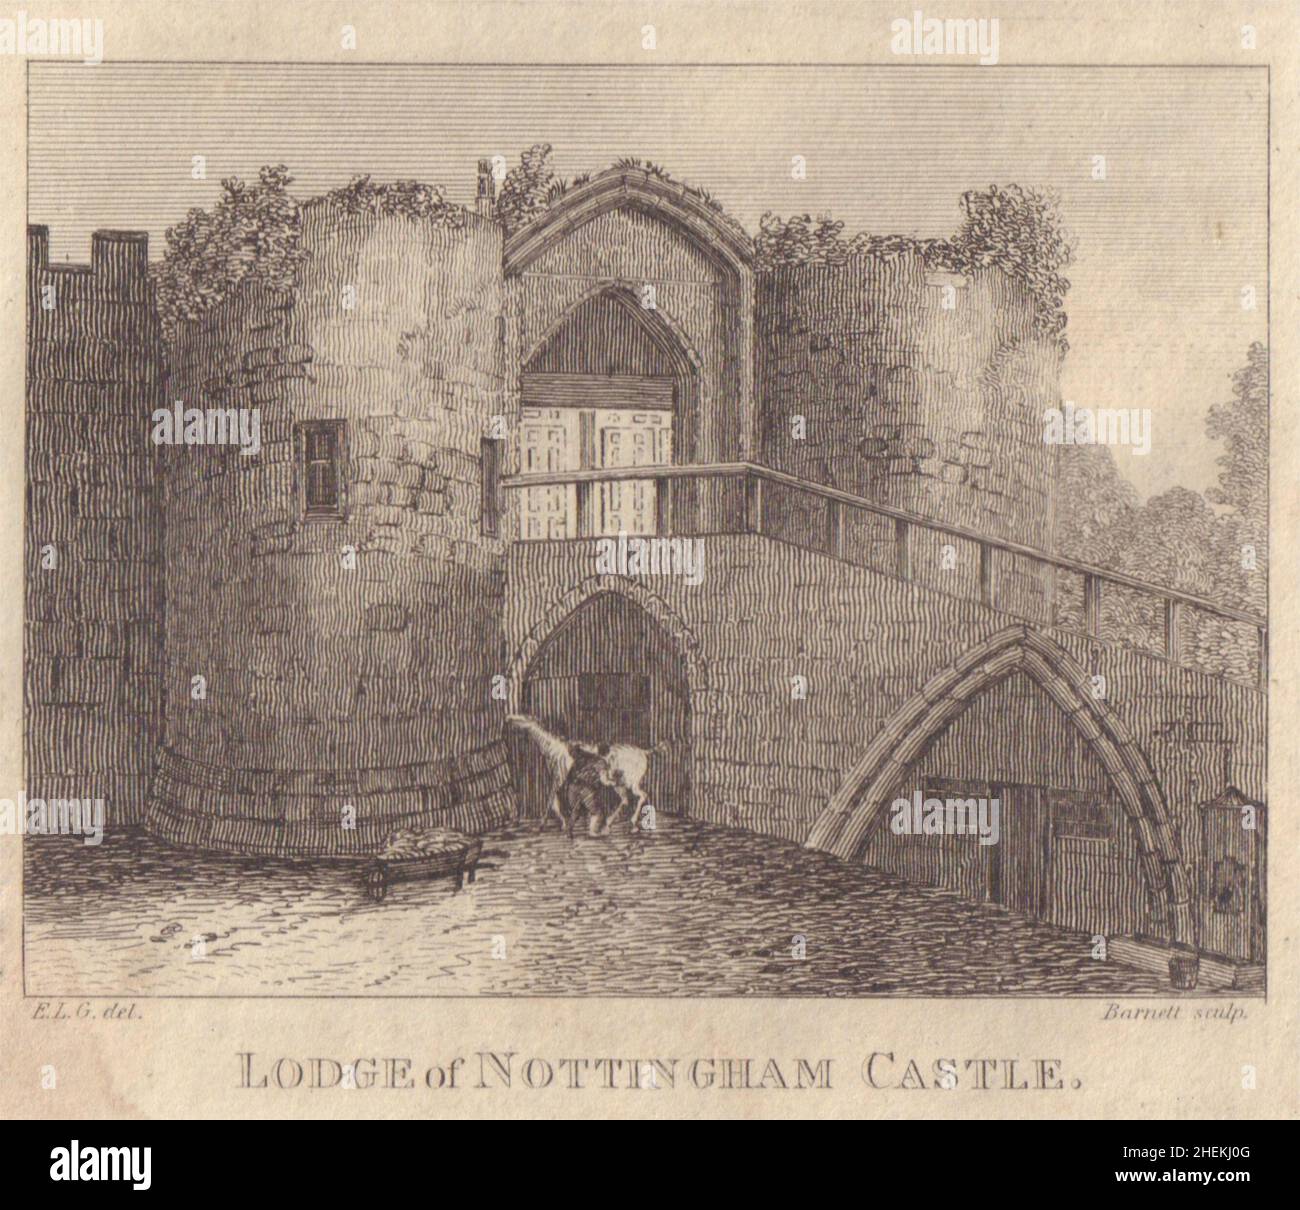 Vue sur le Lodge de Nottingham Castle, Nottingham.Imprimé de l'année 1818 de la région de Notinghamshire Banque D'Images